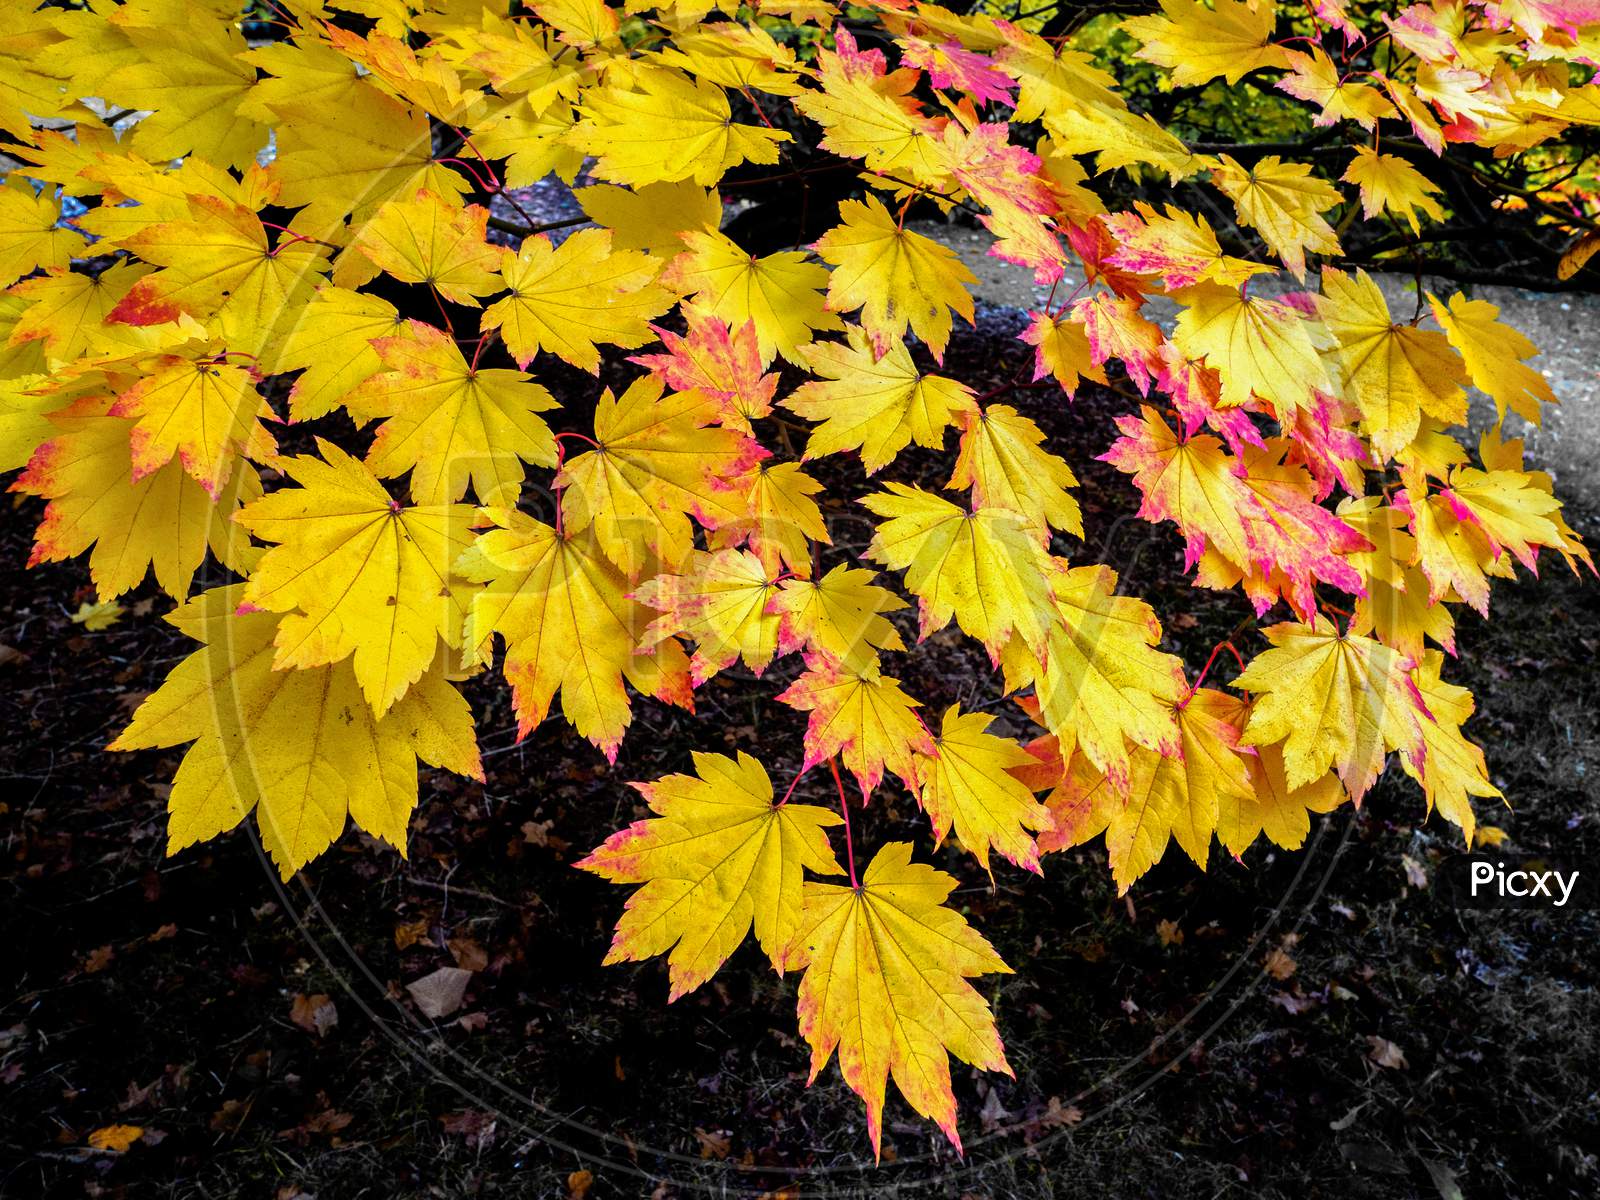 Acer Soccharinum Tree In Autumn